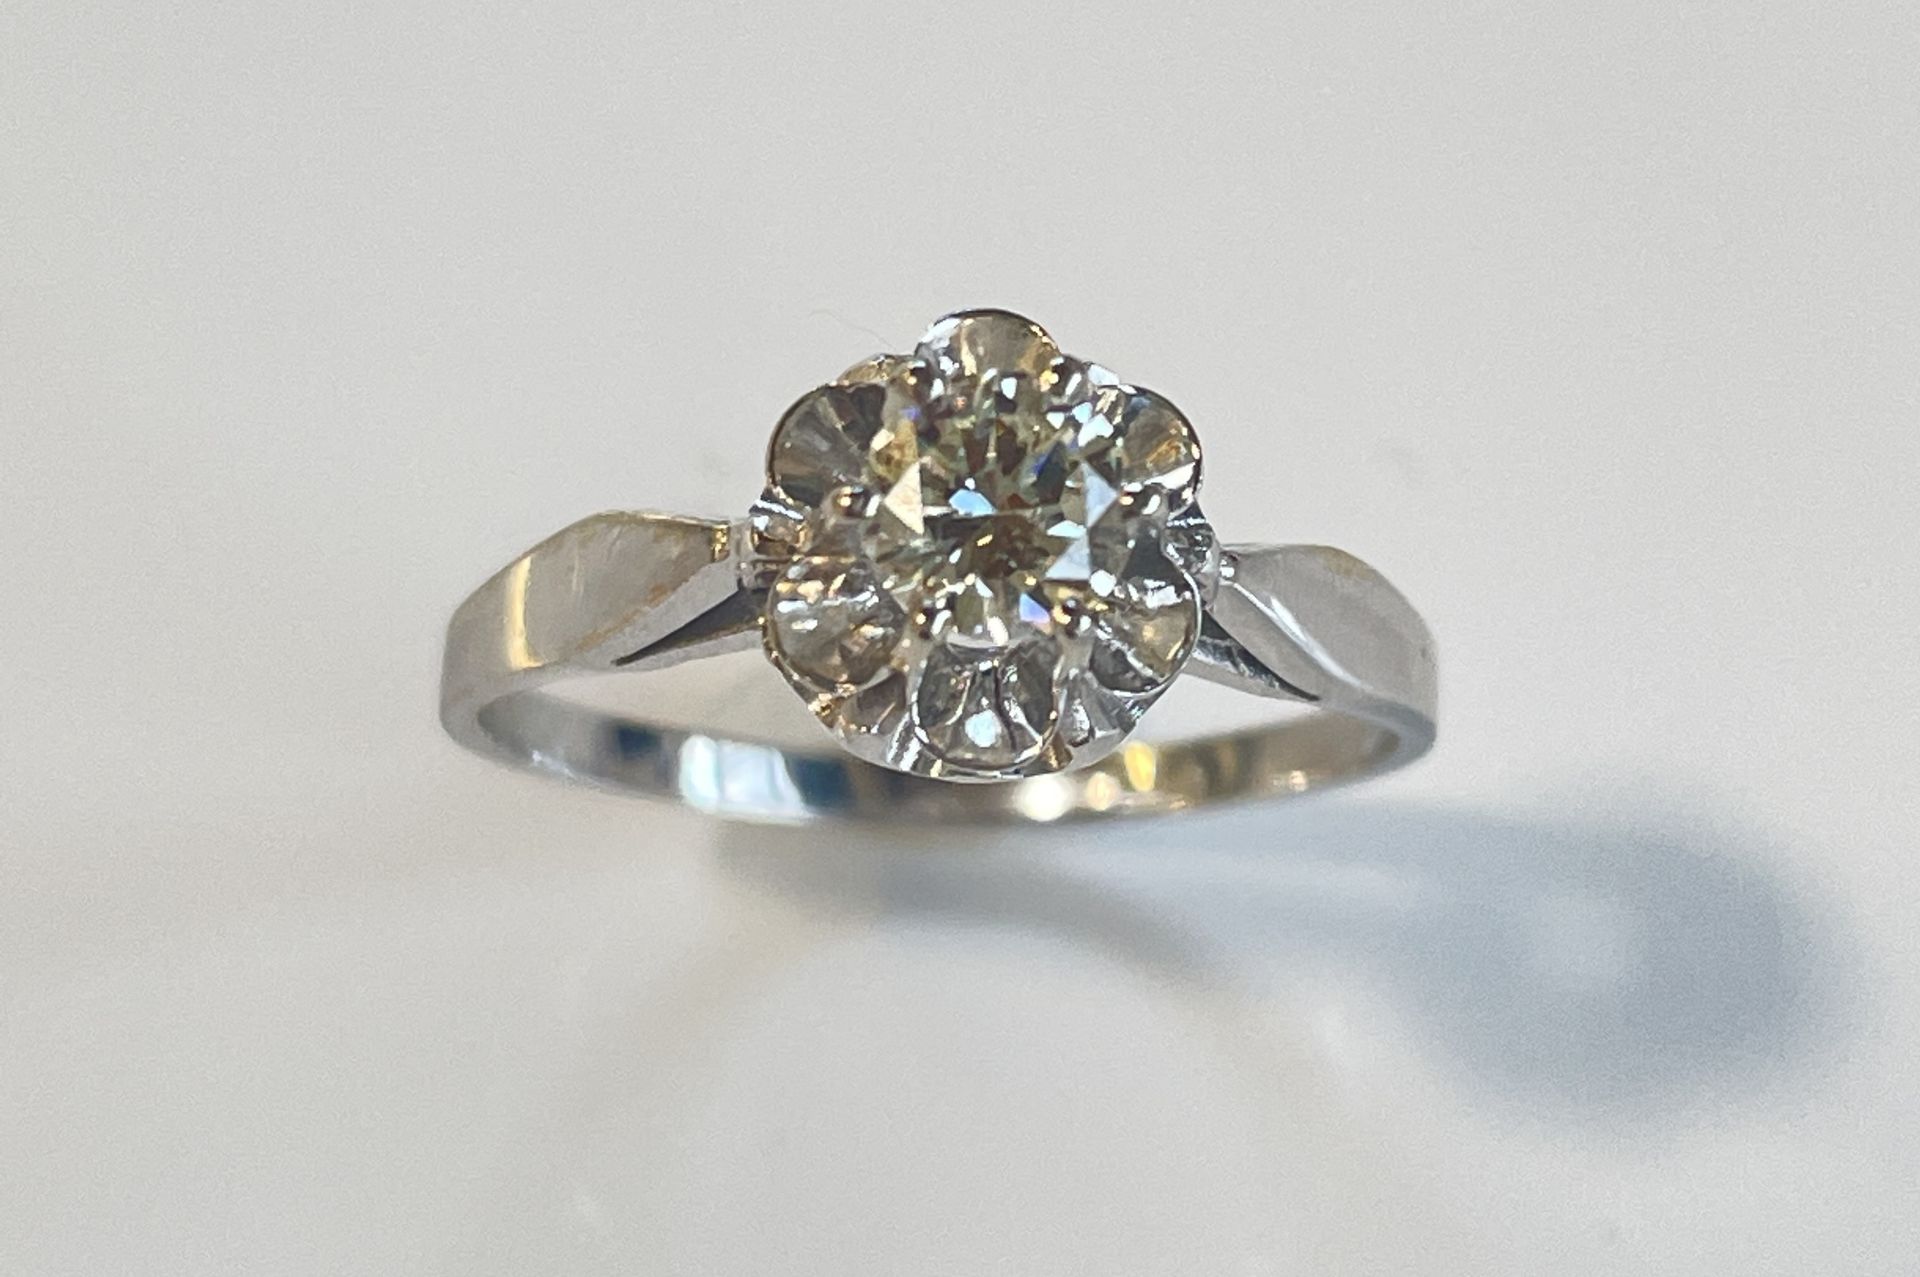 Vintage 18K white gold diamond ring, 0.5 ct. - Image 2 of 4